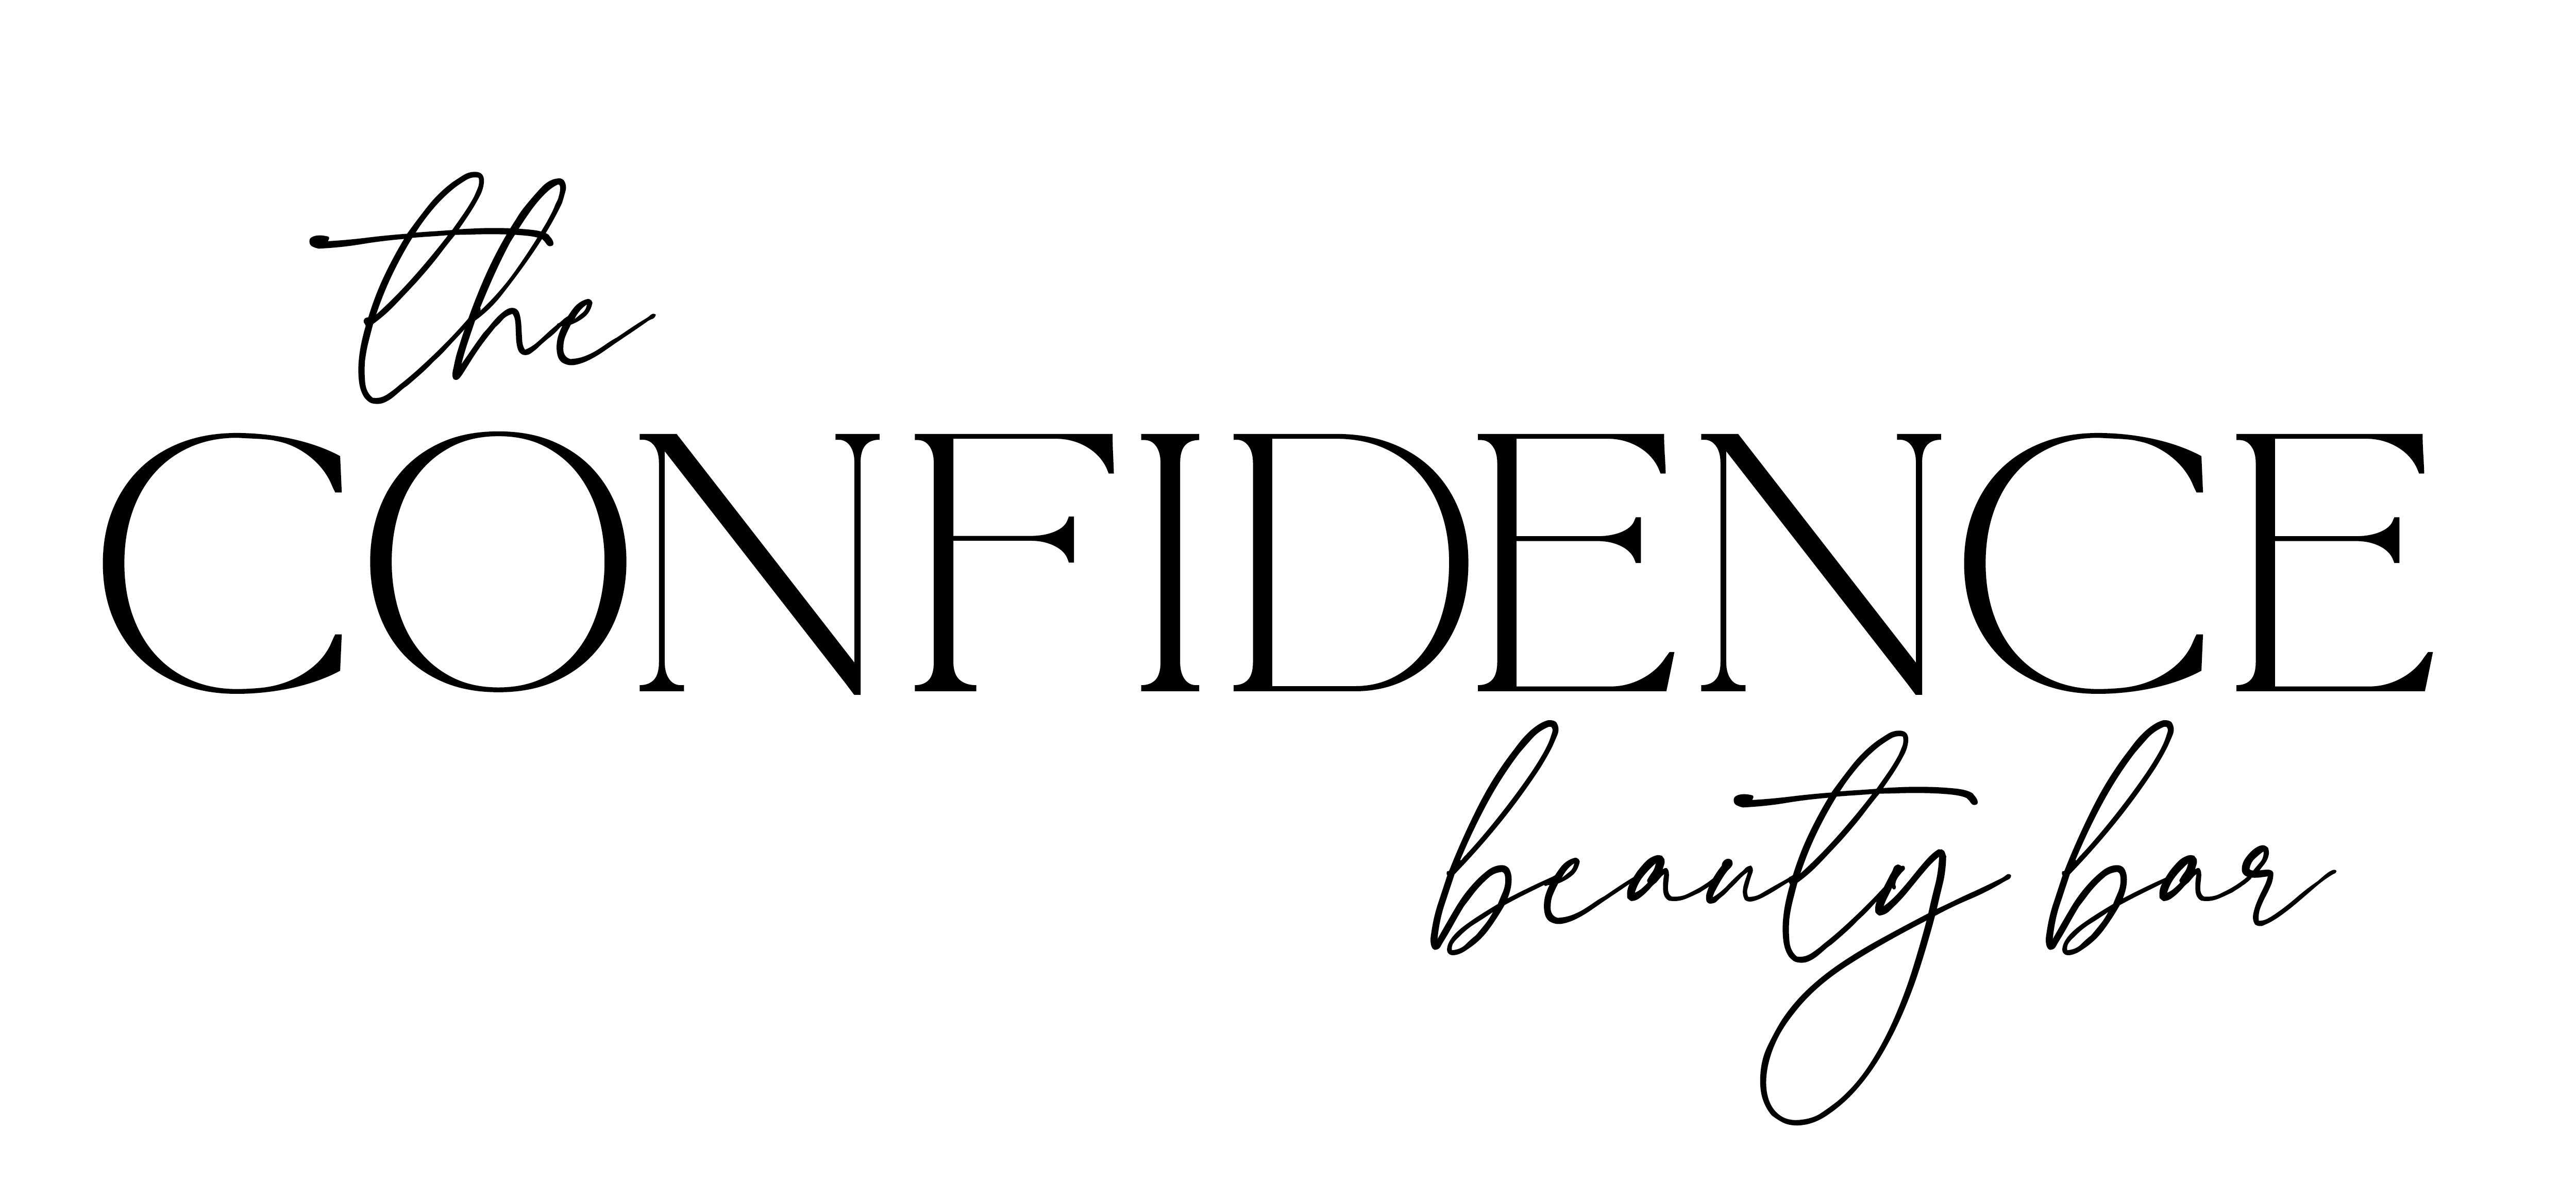 The Confidence Beauty Bar